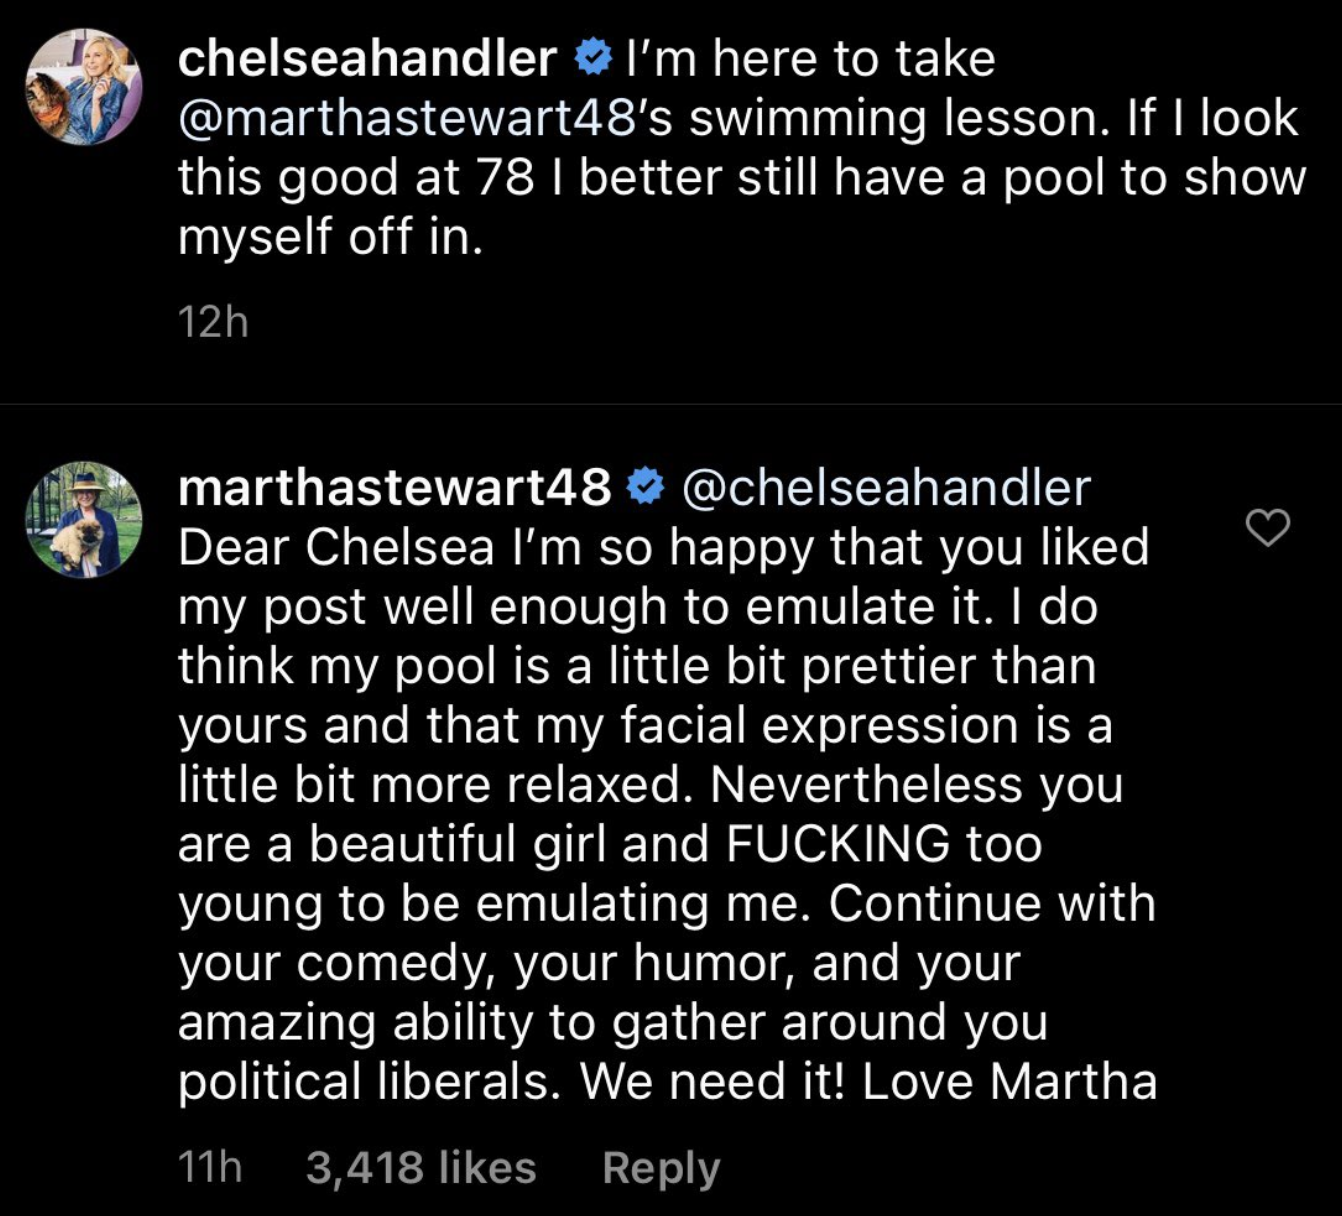 Martha Stewart dragging Chelsea